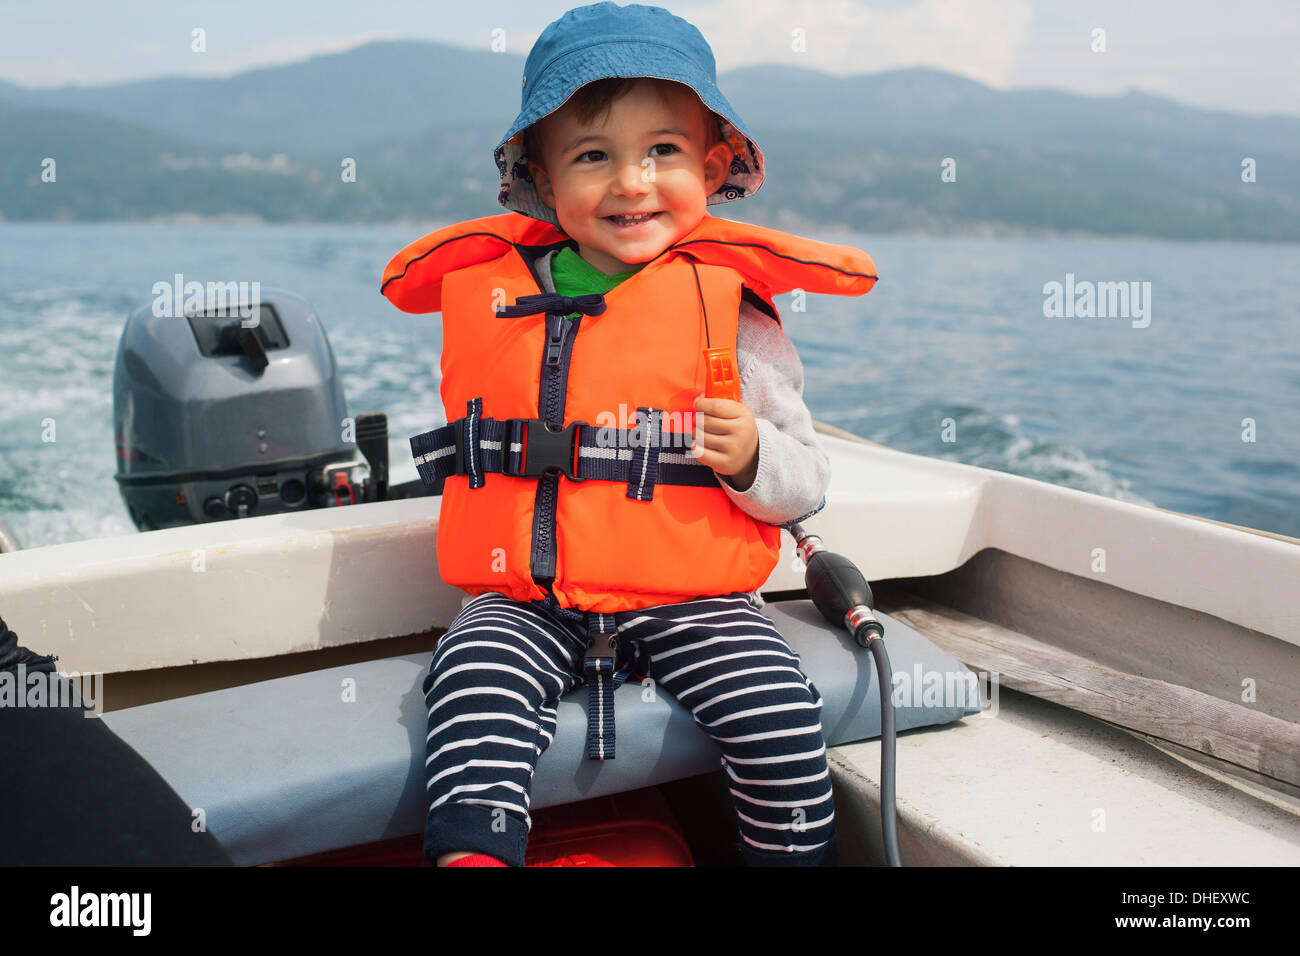 Boy enjoying boat ride Stock Photo